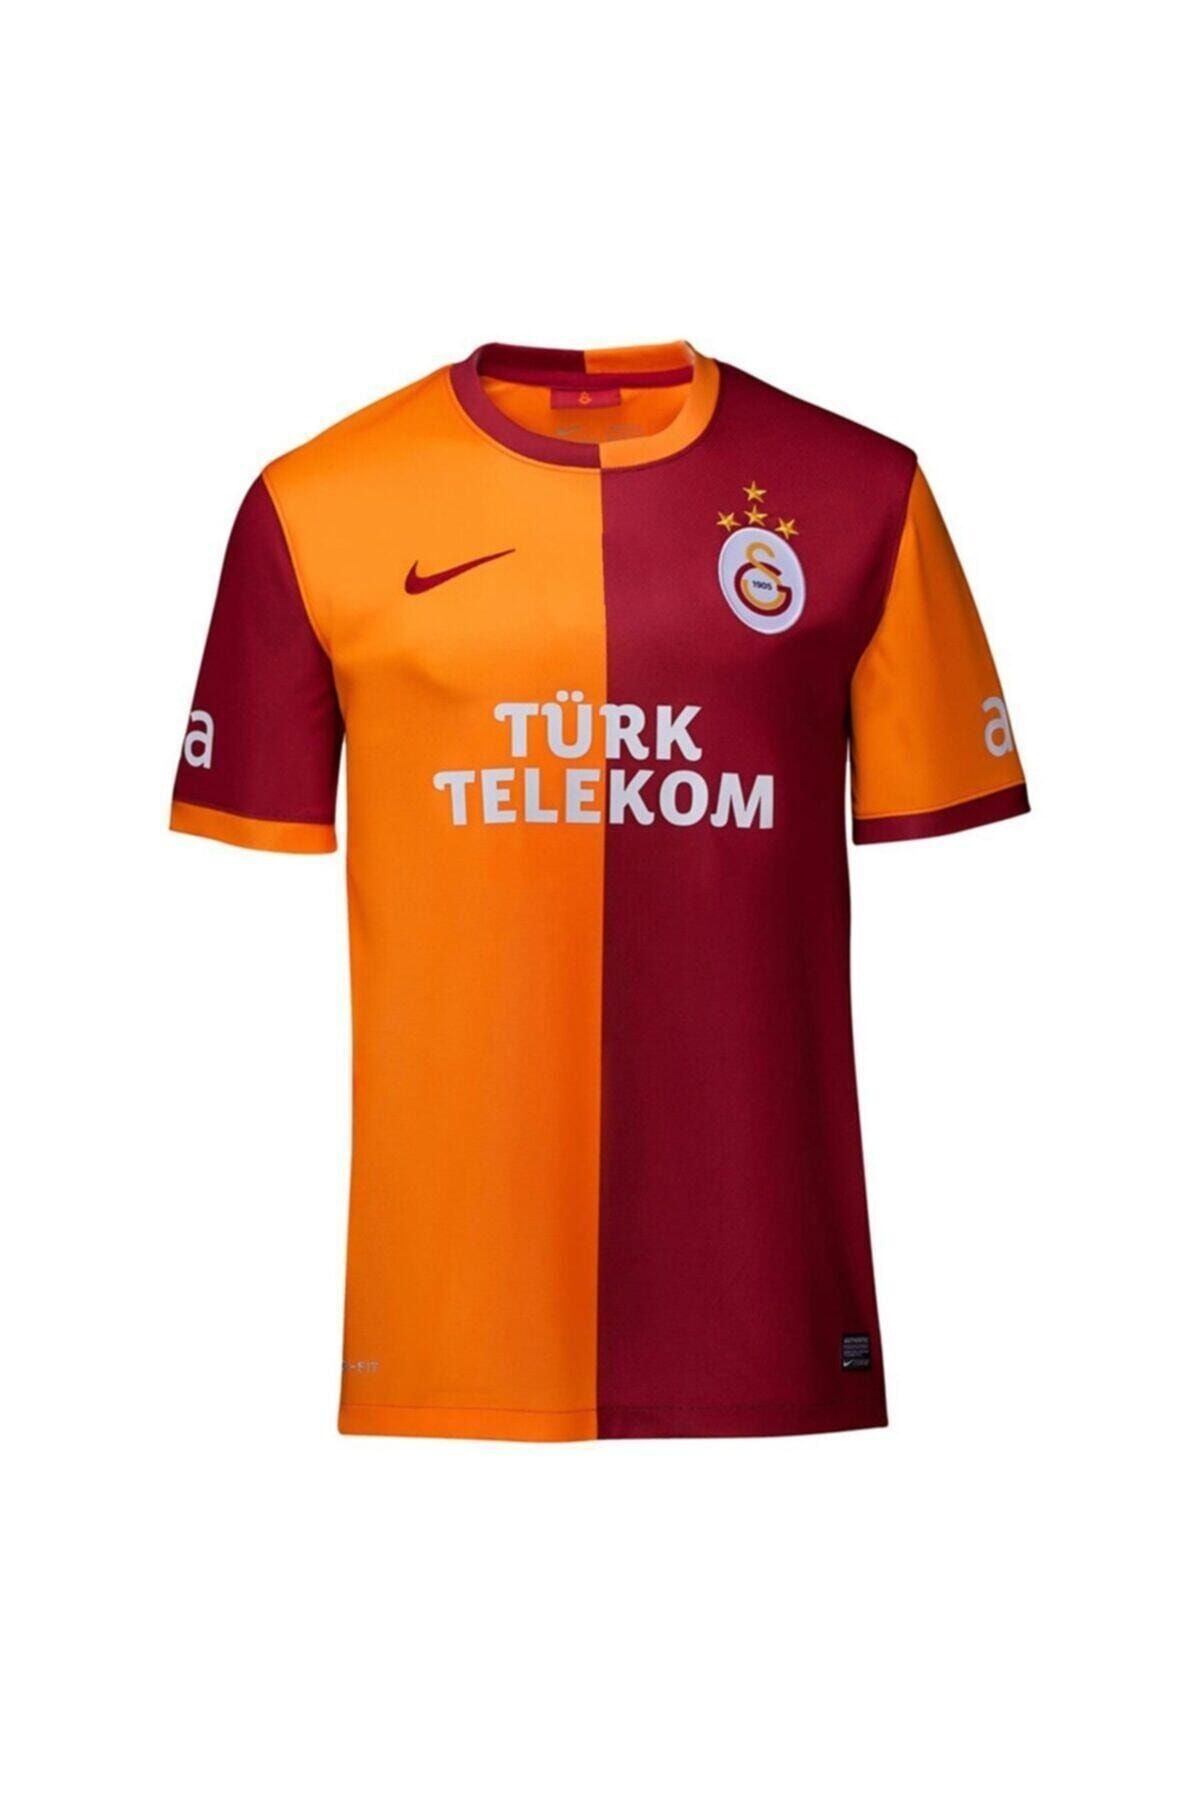 Galatasaray Orjinal Parçalı Forma 2013-2014 Sezonu 4 Yıldızlı Forma